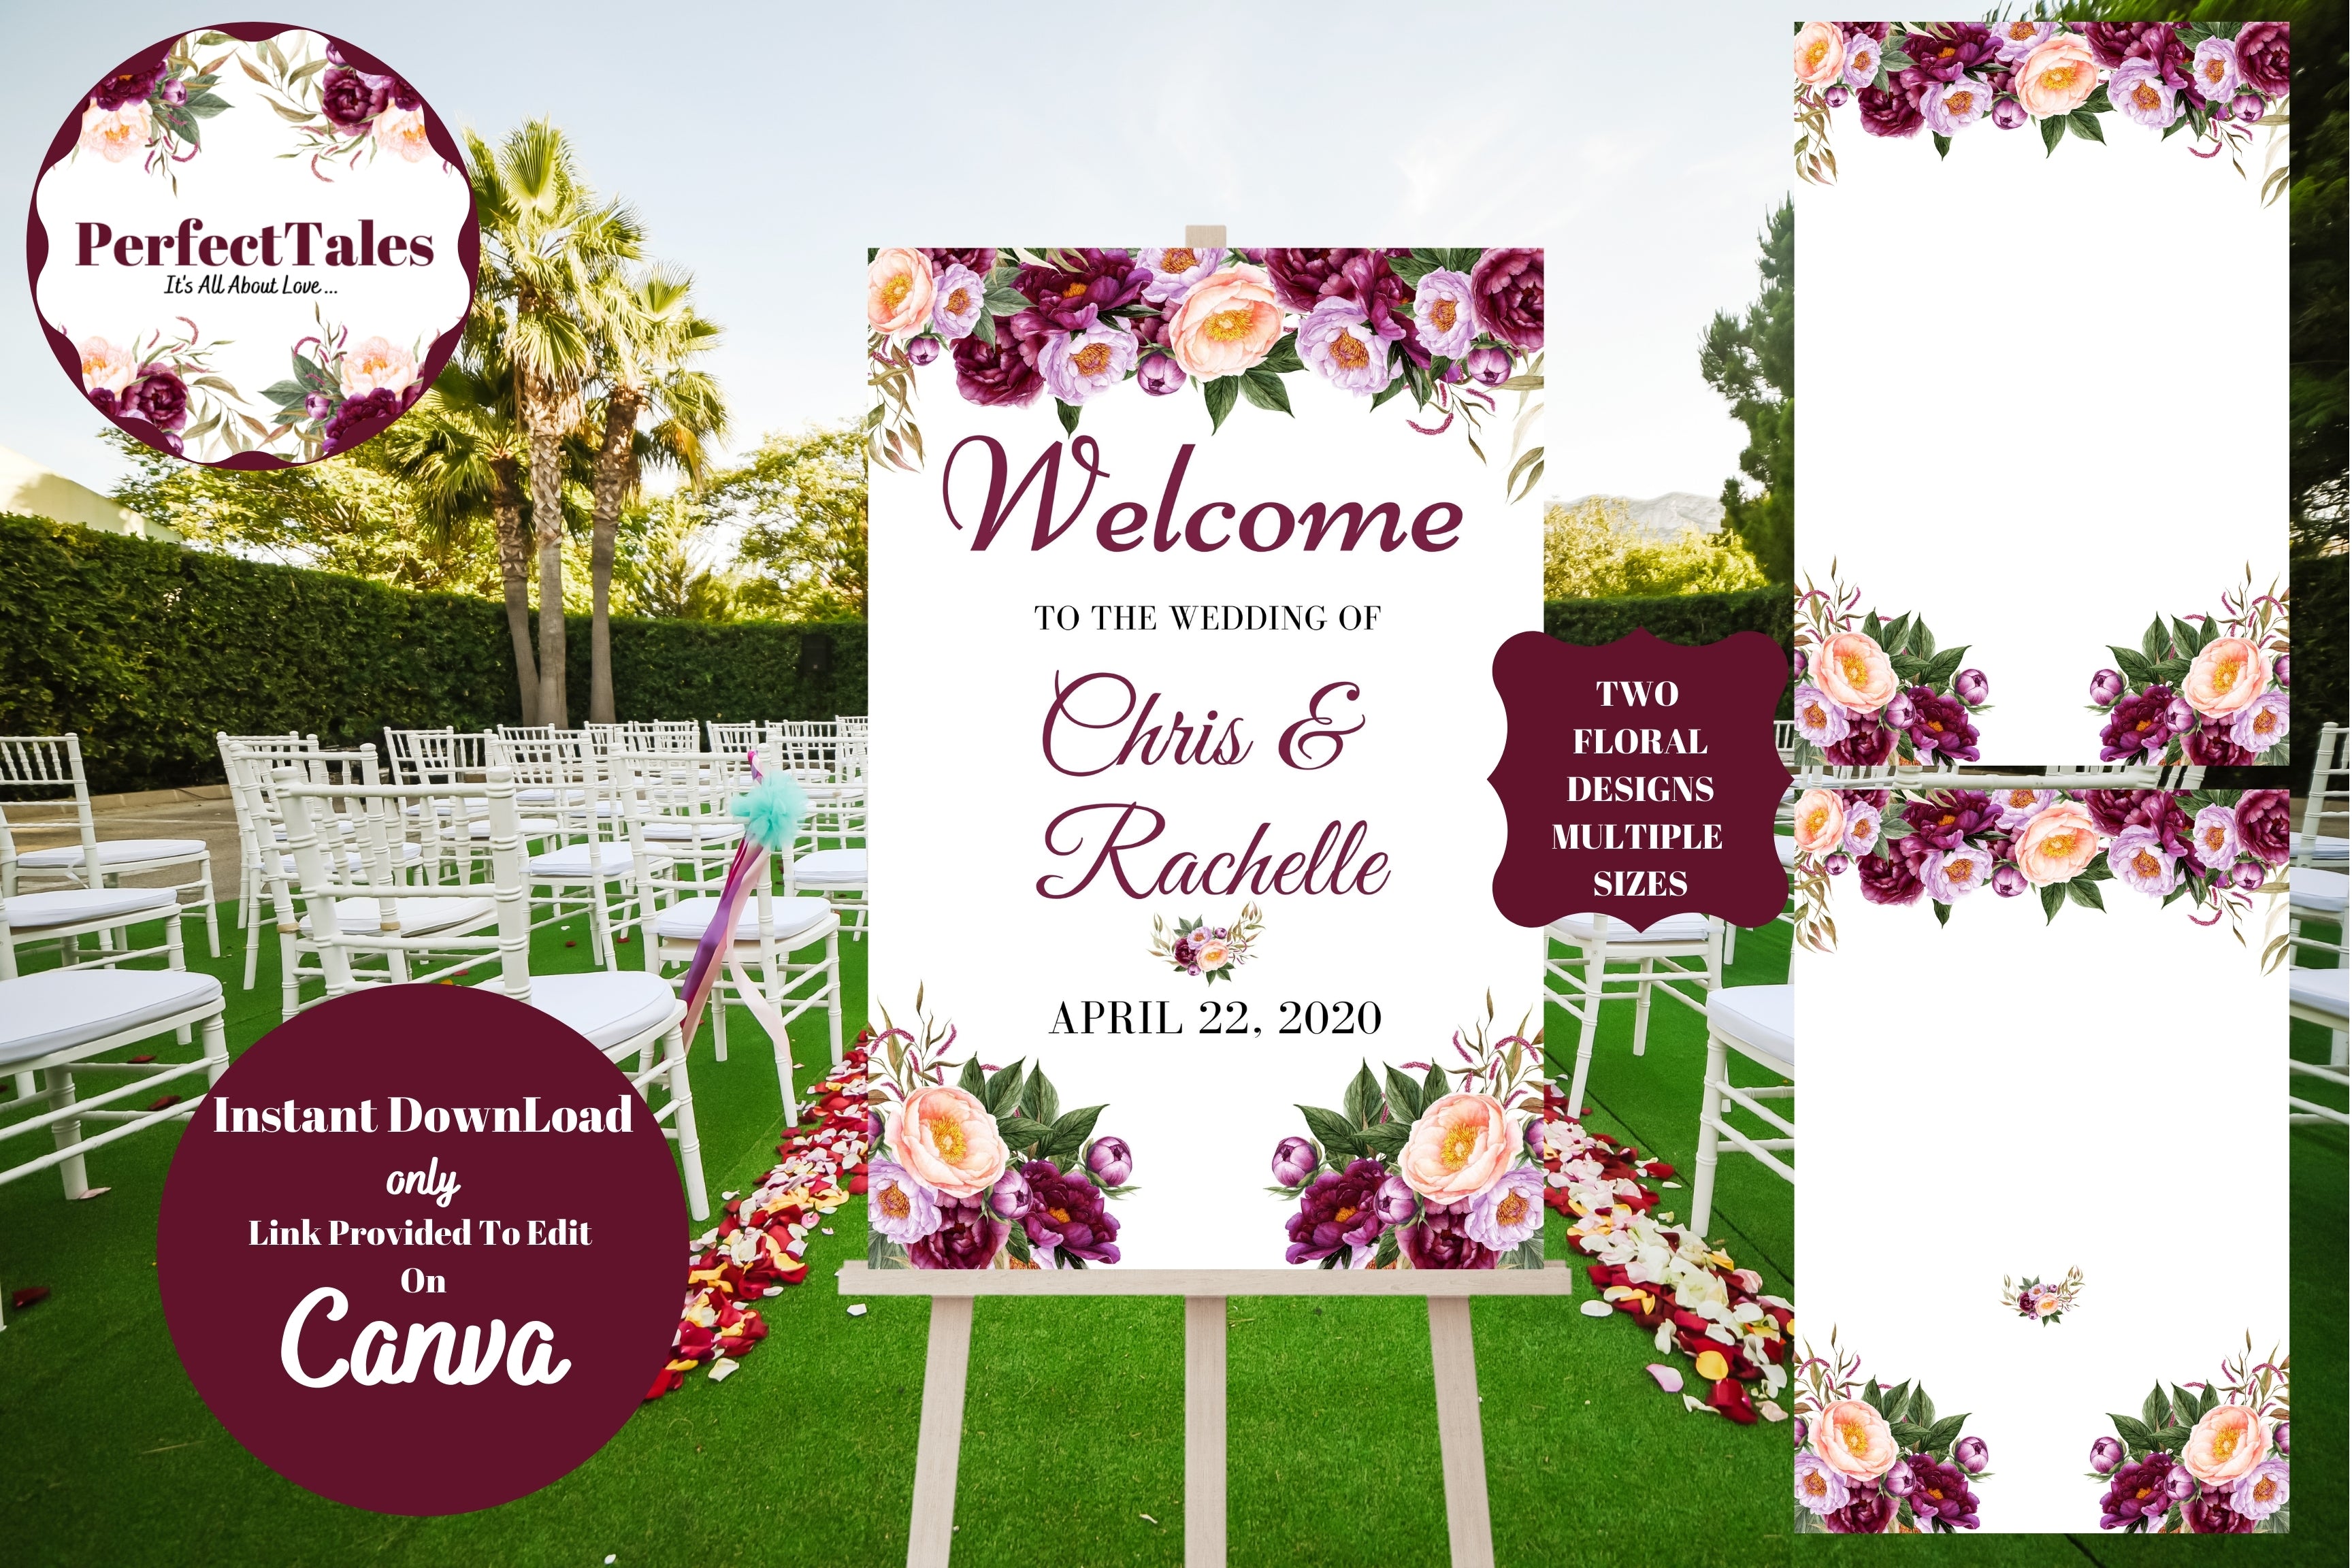 Wedding Welcome Signs 3 - Peonies Flowers